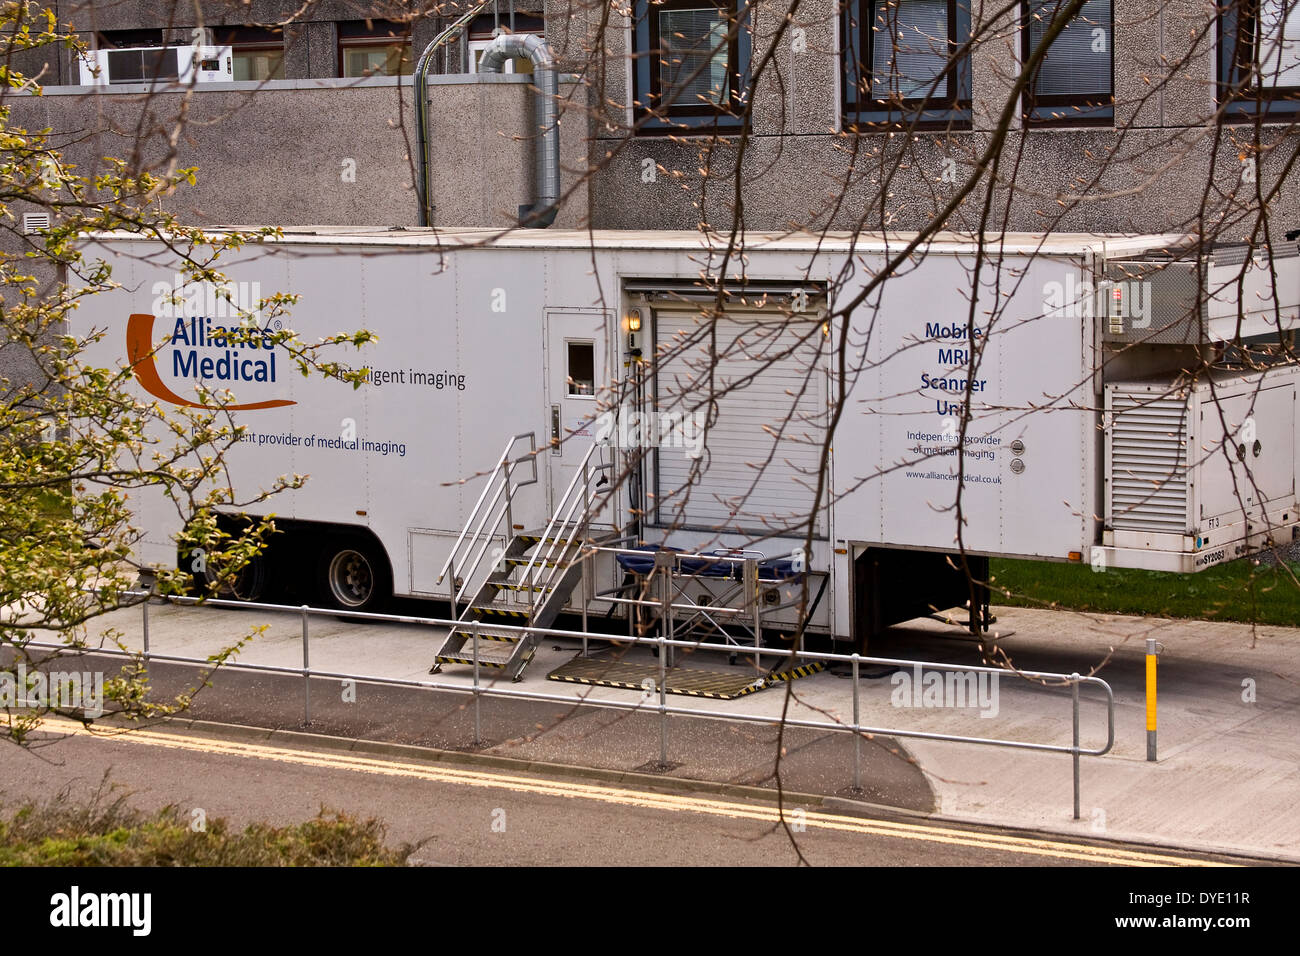 "Alliance Medical" Anbieter von intelligenten und medizinische Bildgebung Mobile MRI Scanner-Einheit außerhalb jüngere Krankenhaus in Dundee, Großbritannien Stockfoto